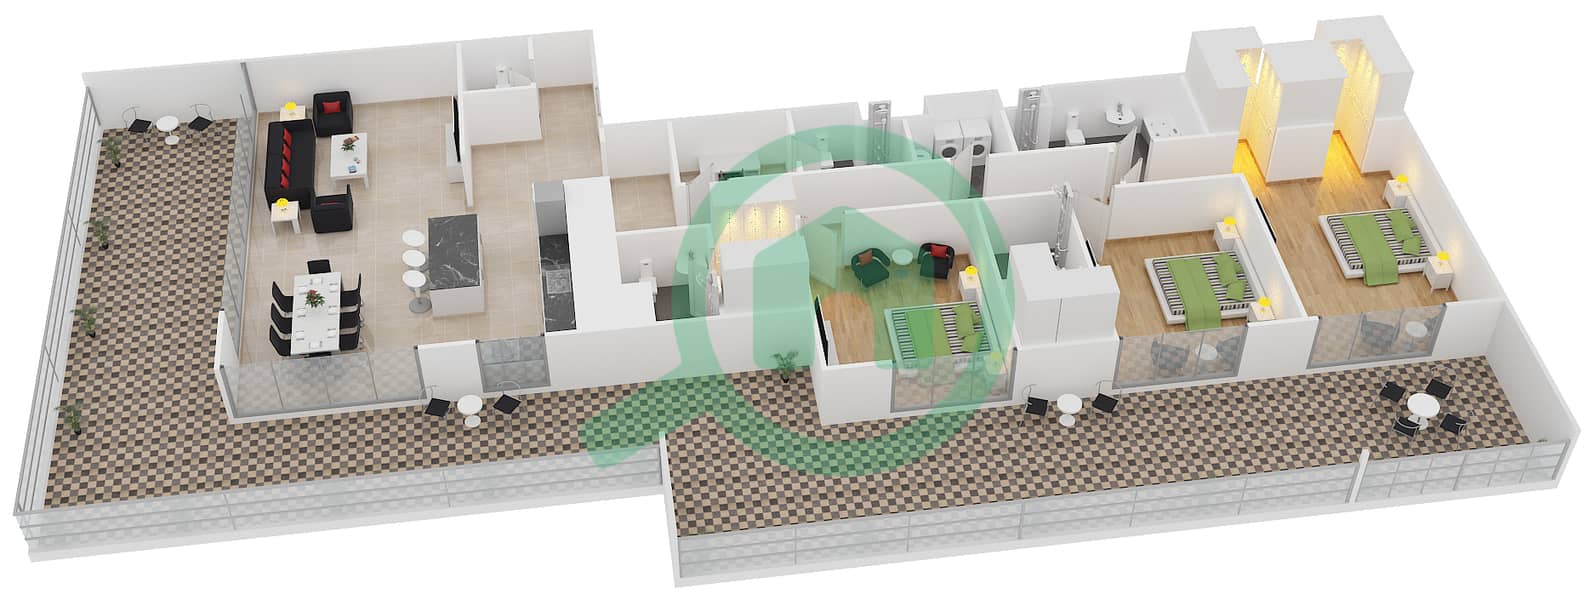 Belgravia 1 - 3 Bedroom Apartment Type F1 Floor plan interactive3D